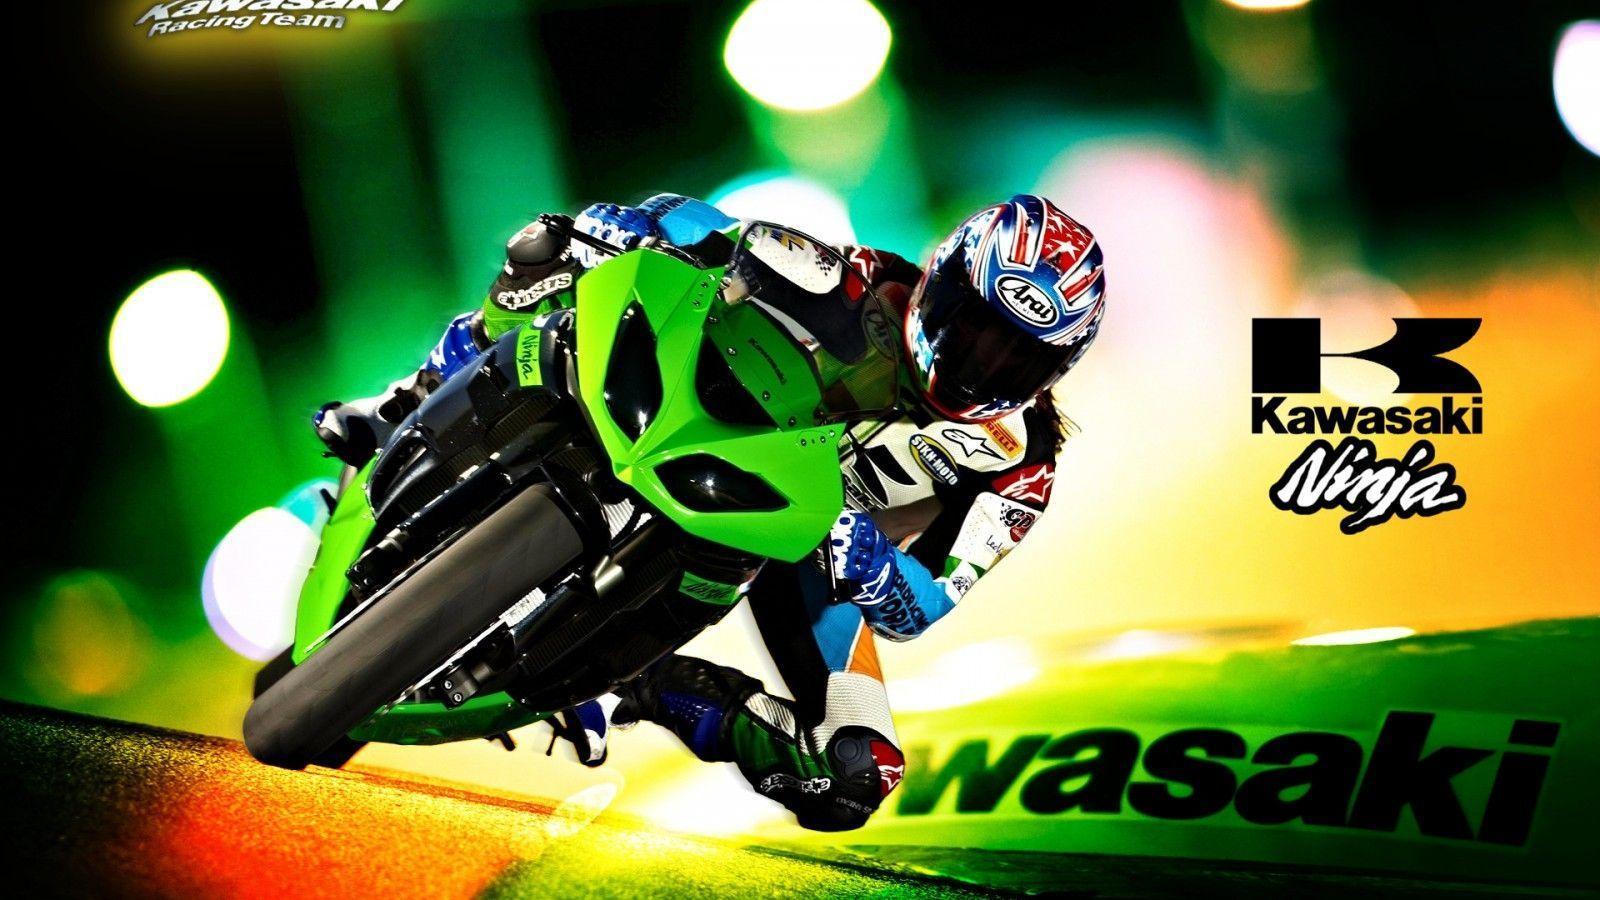 Kawasaki Ninja ZX 10R 62730 Motorbikes Wallpaper